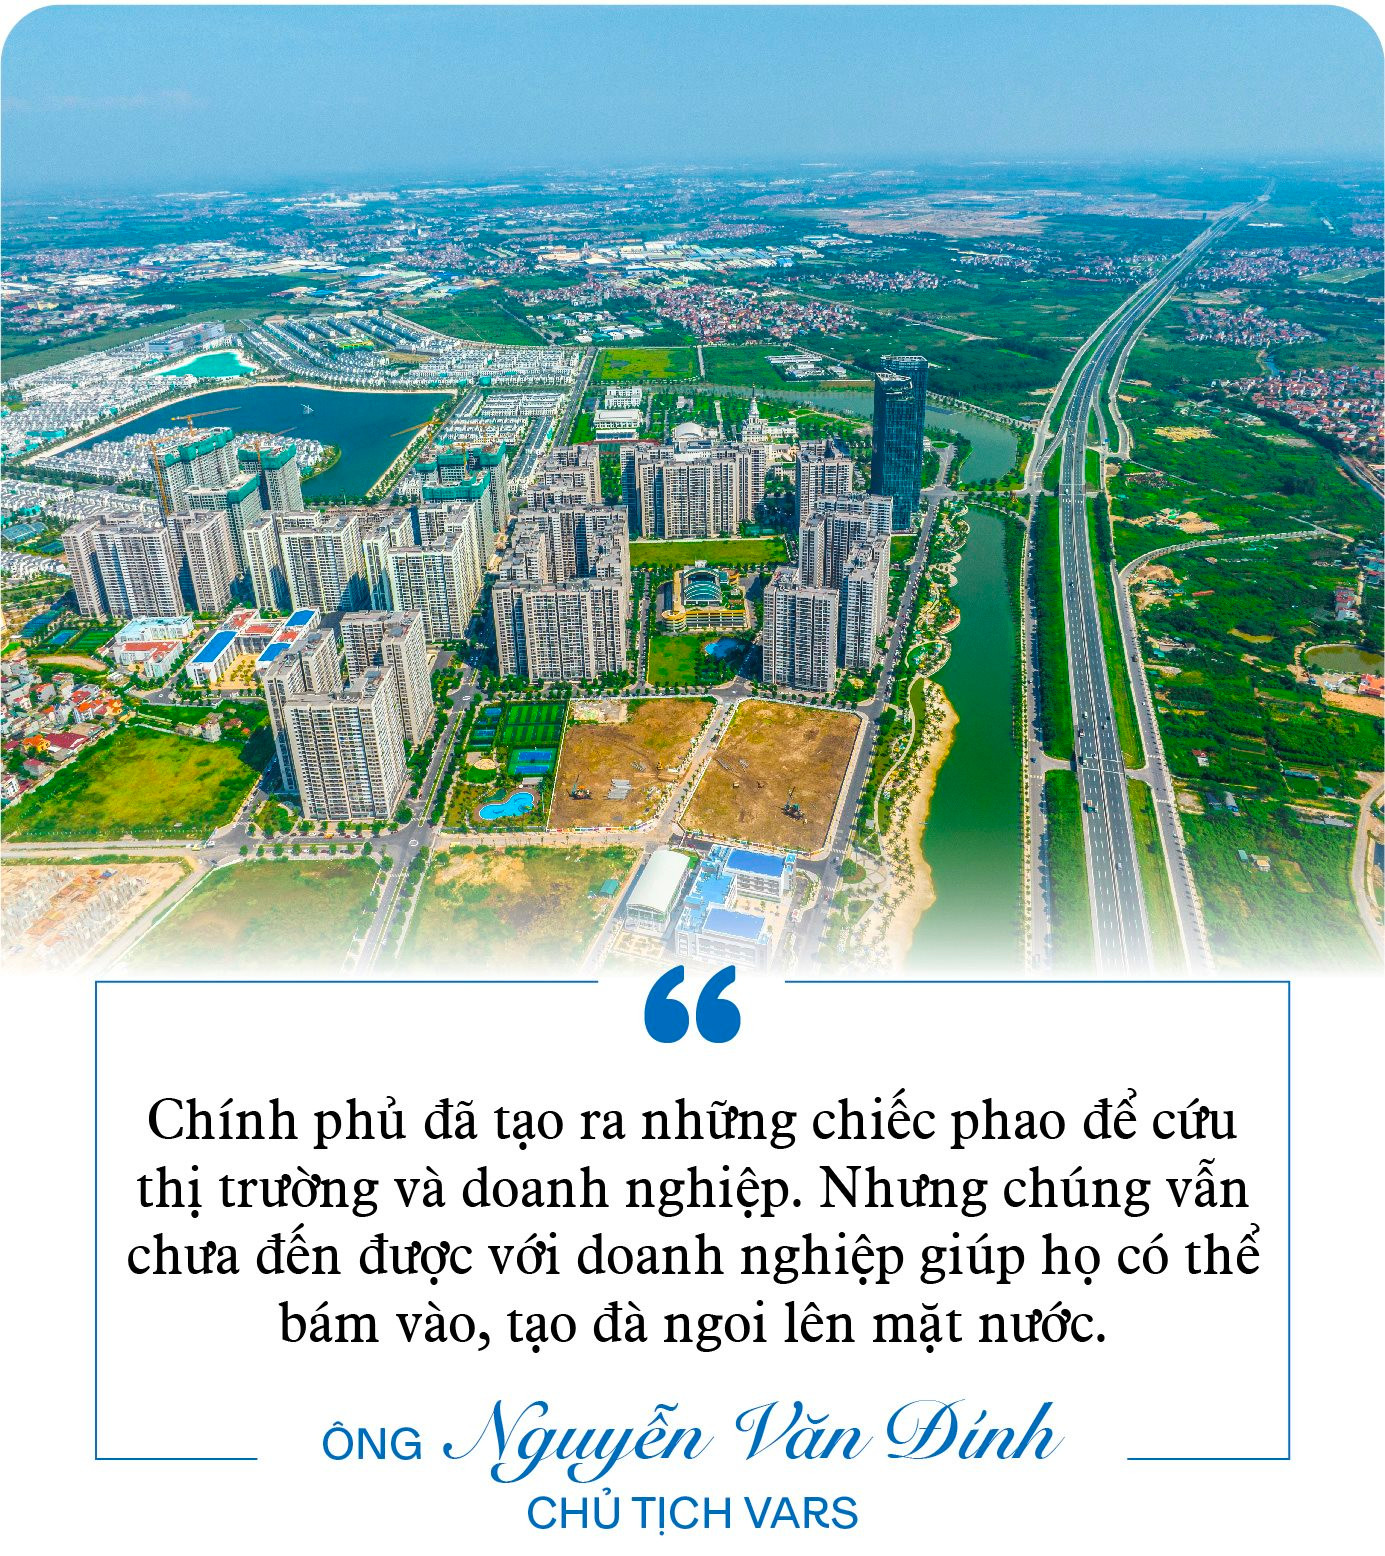 Chủ tịch Hội môi giới Nguyễn Văn Đính: &quot;Một số doanh nghiệp bất động sản chỉ còn trụ được đến quý 2/2023&quot; - Ảnh 4.